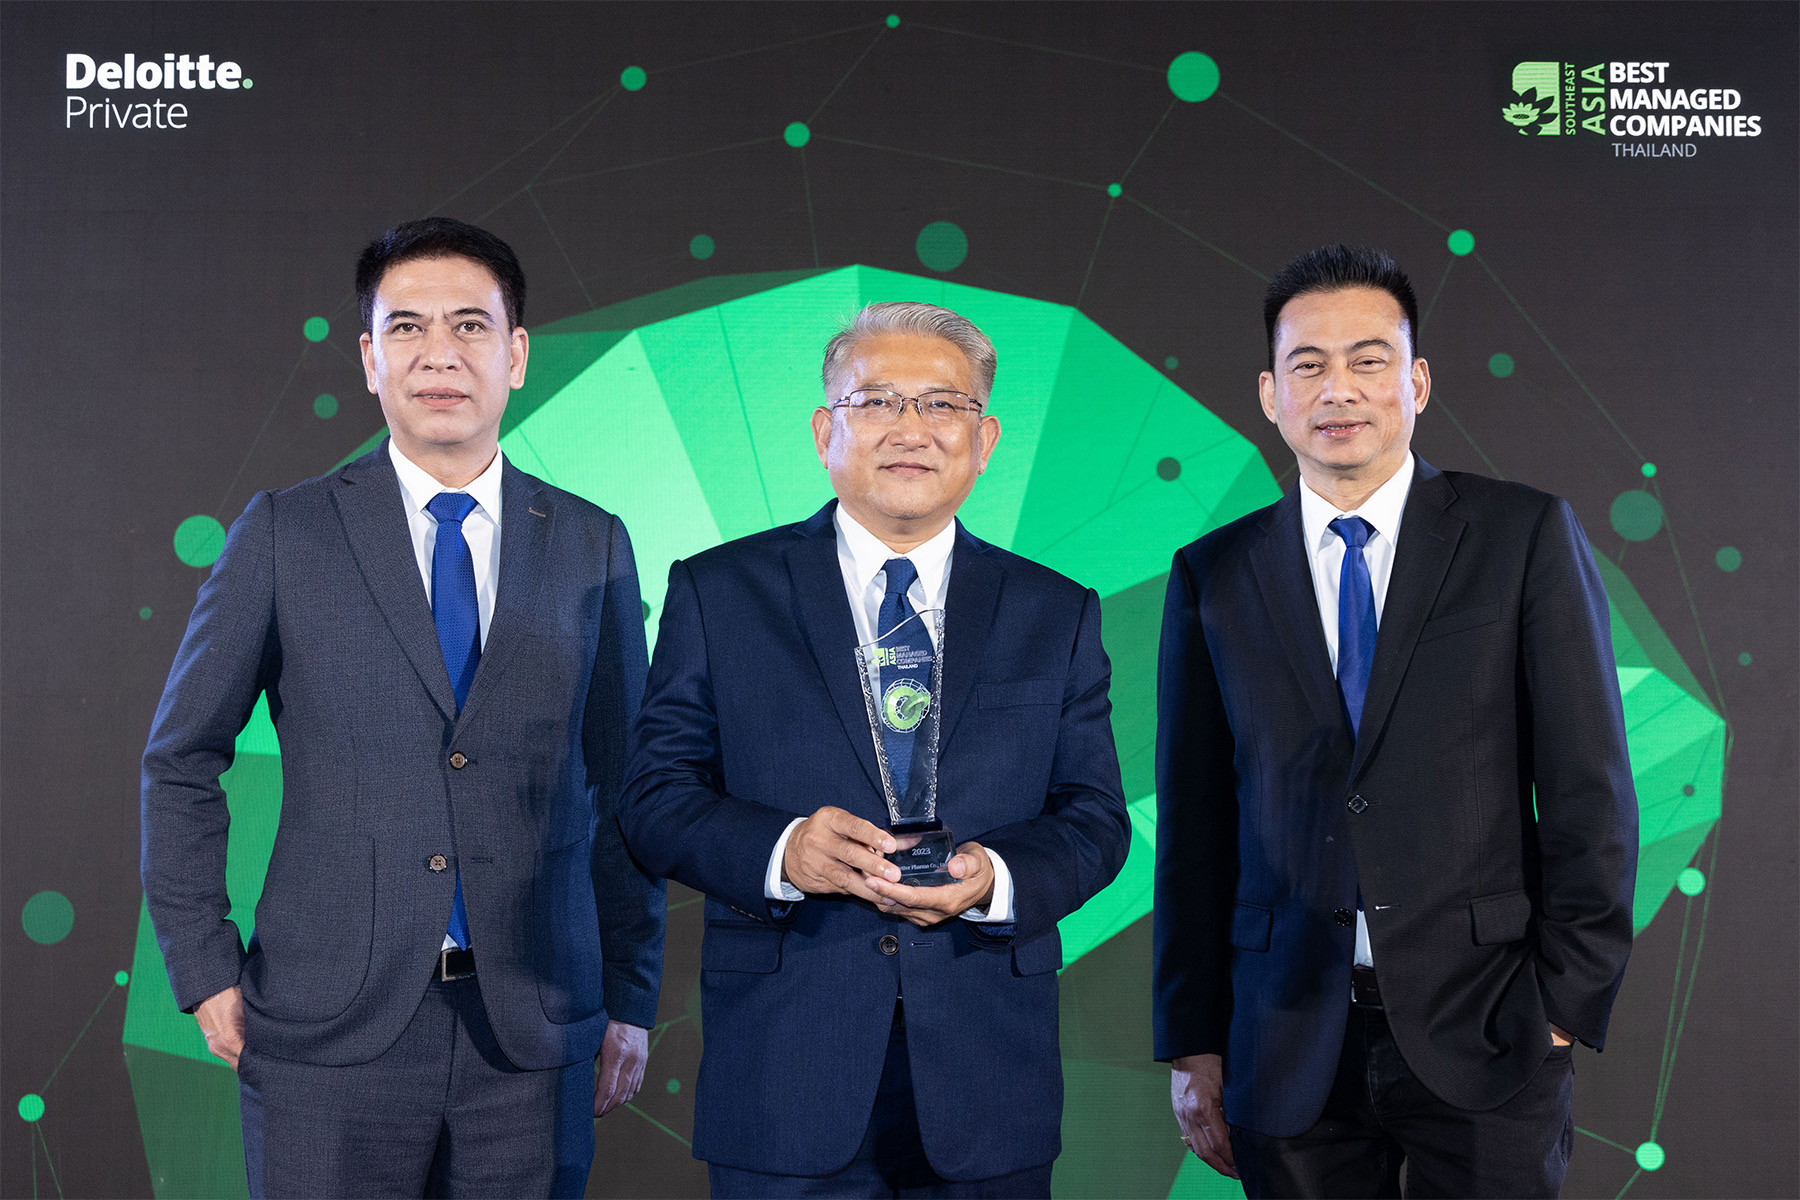 เบ็ทเทอร์ฟาร์ม่า รับรางวัล “Thailand's Best Managed Companies” ต่อเนื่องเป็นปีที่ 3